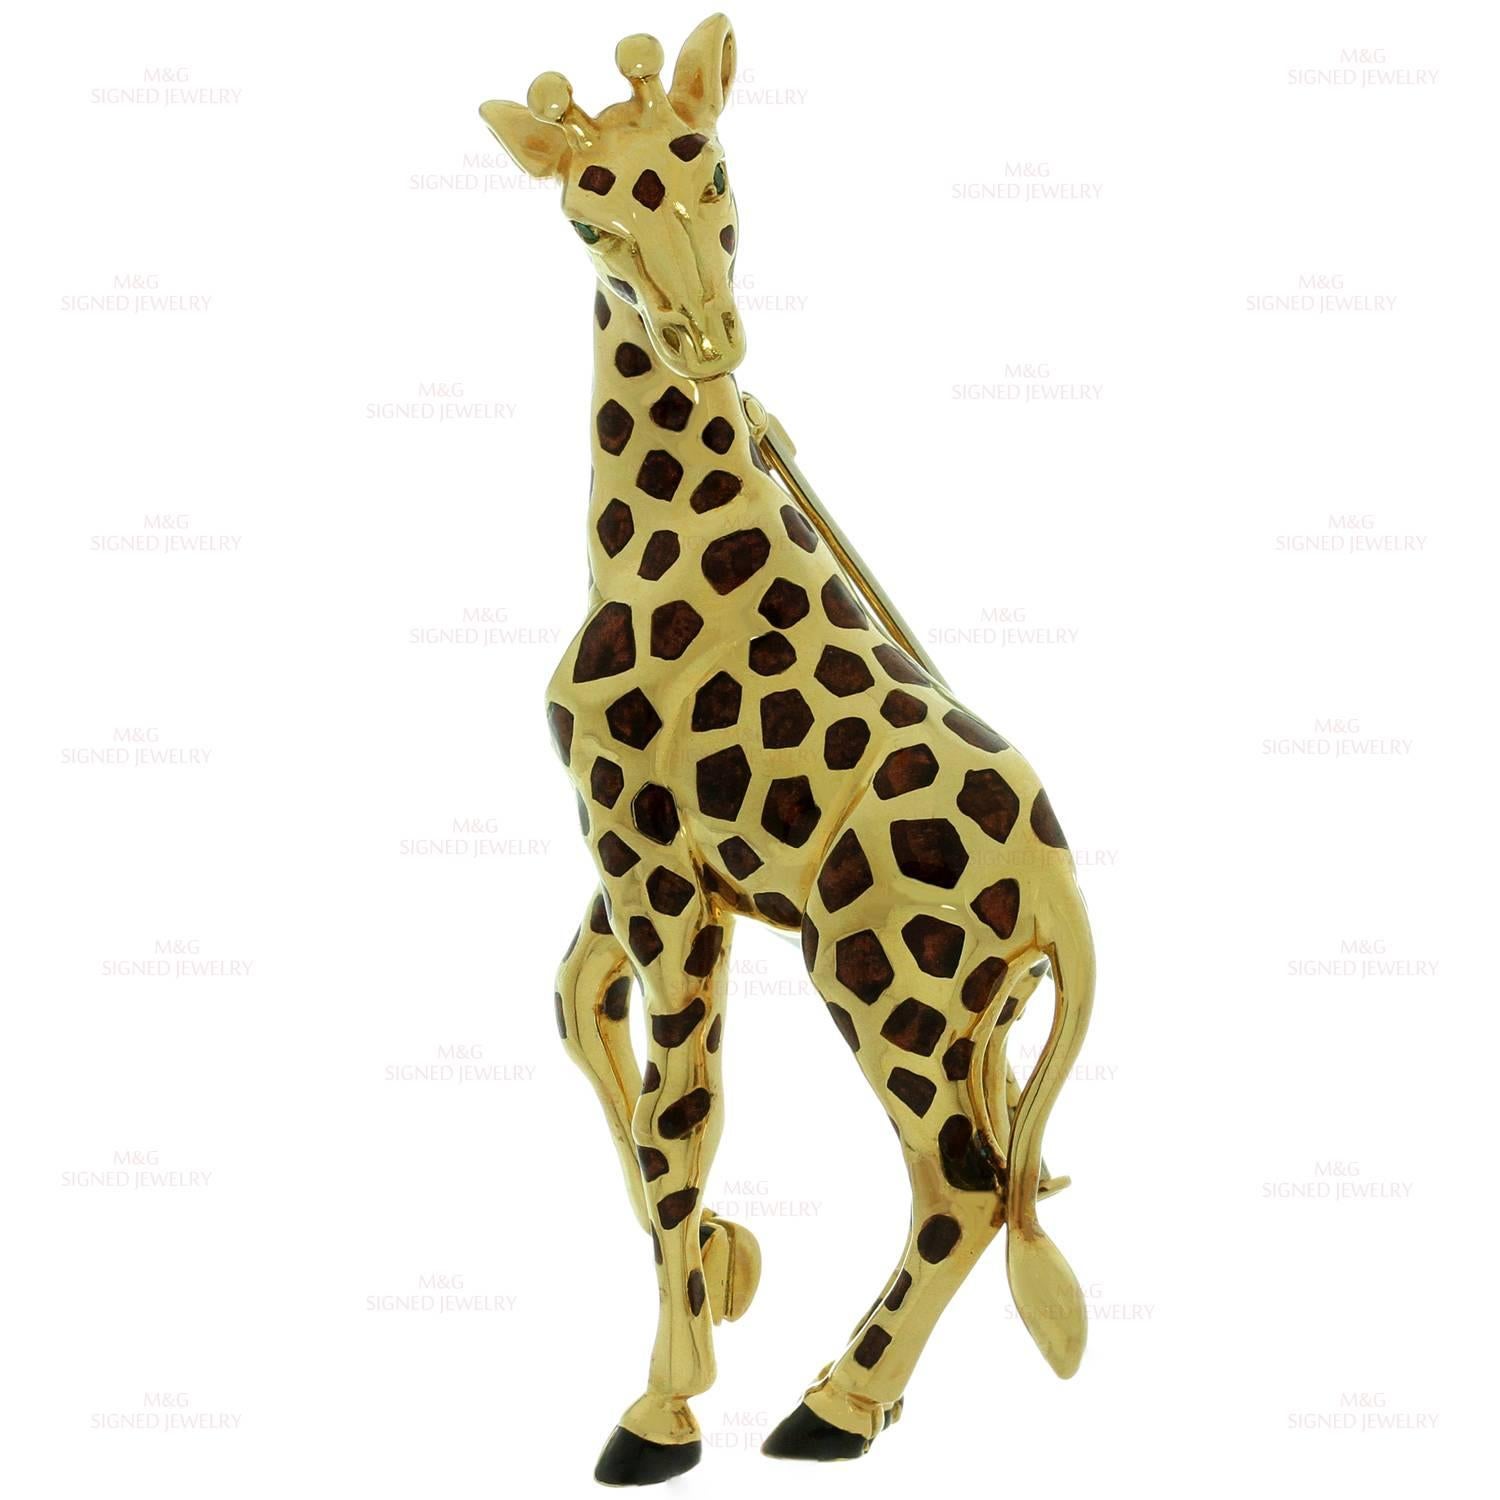 giraffe brooch pin